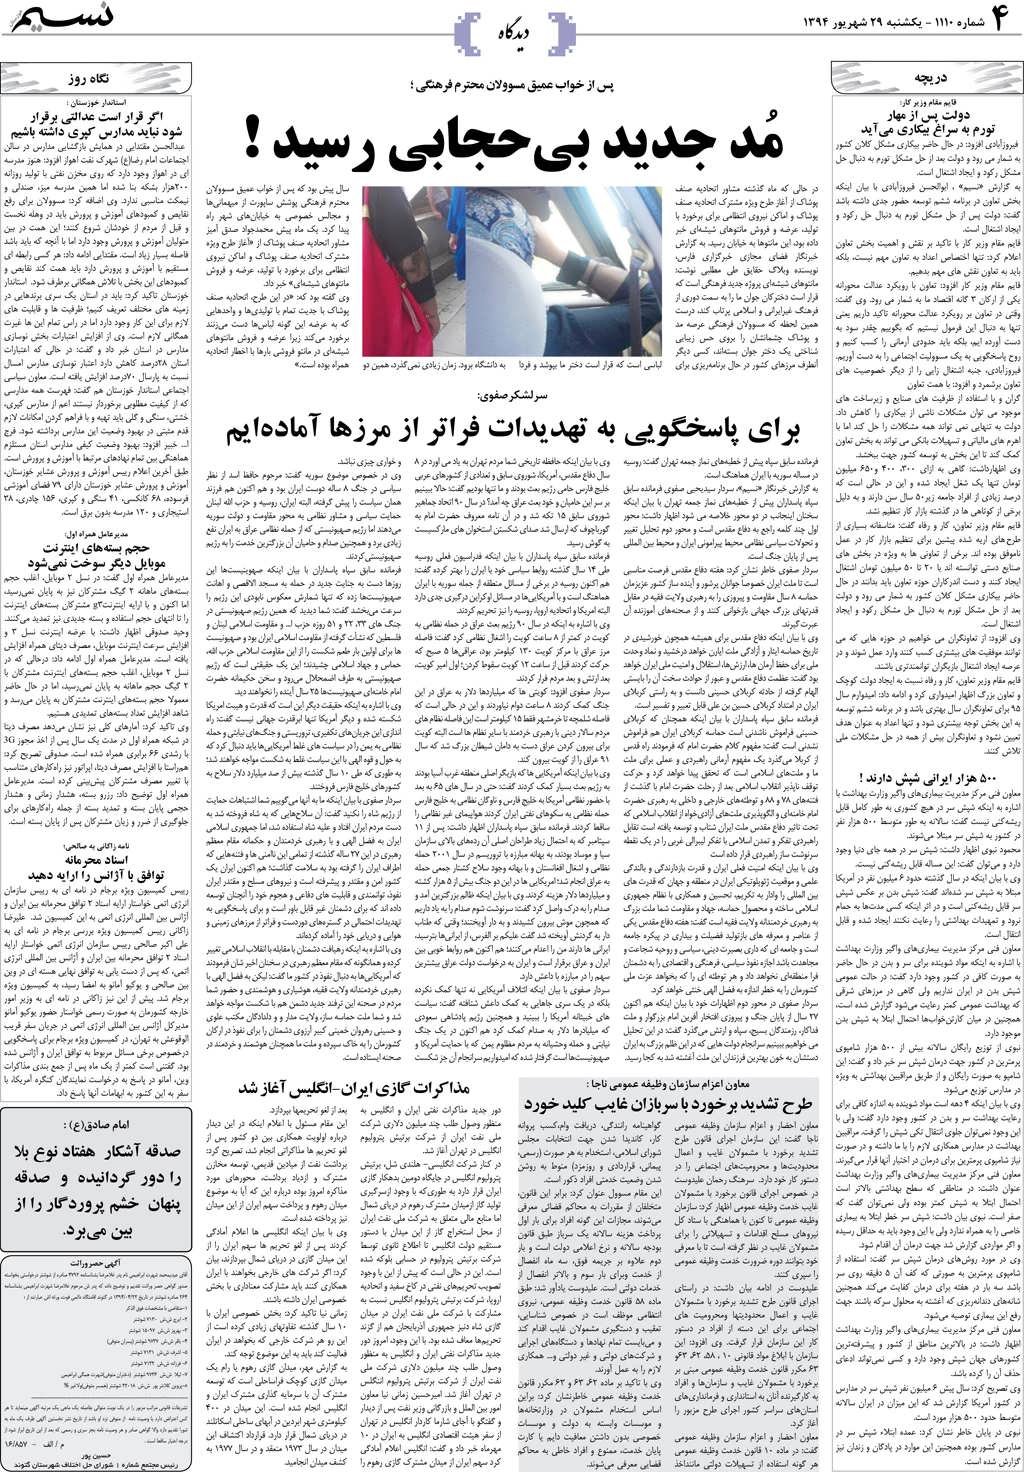 صفحه دیدگاه روزنامه نسیم شماره 1110